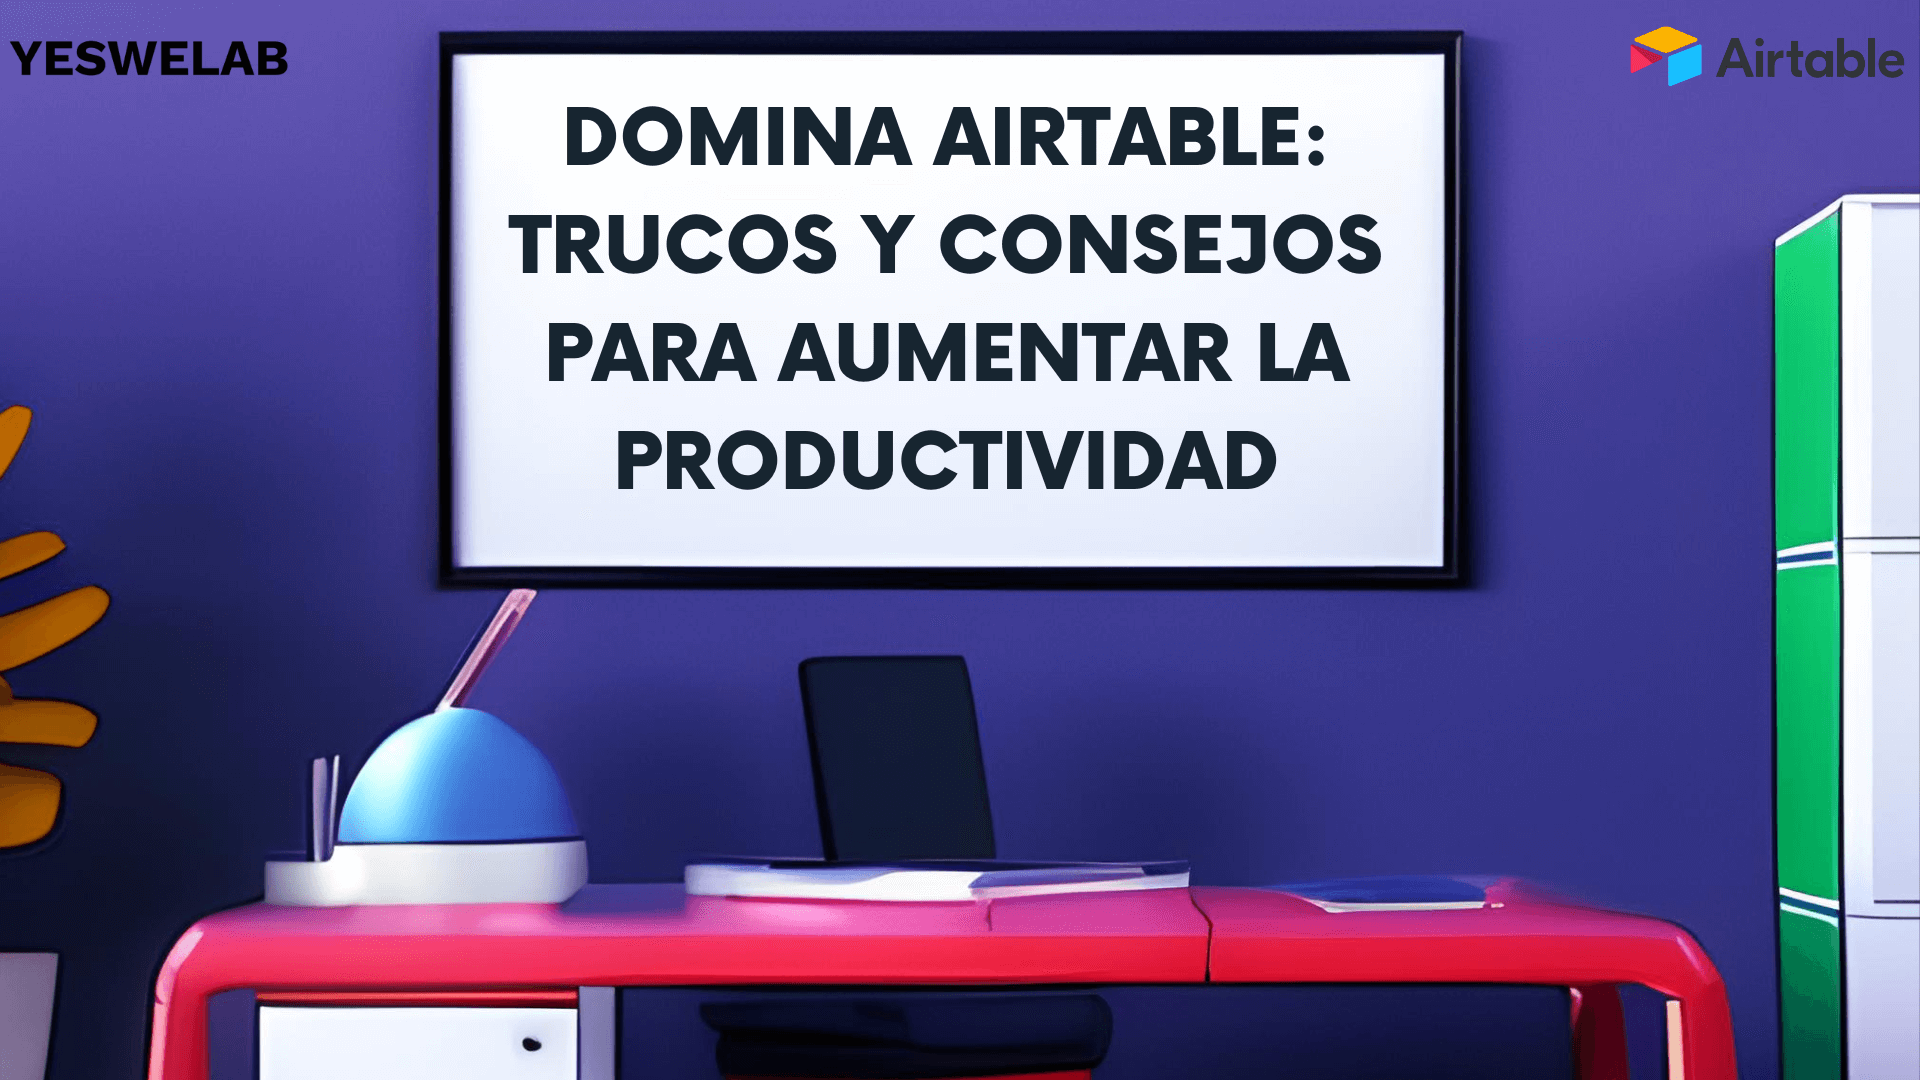 Domina Airtable: Trucos y consejos para aumentar la productividad